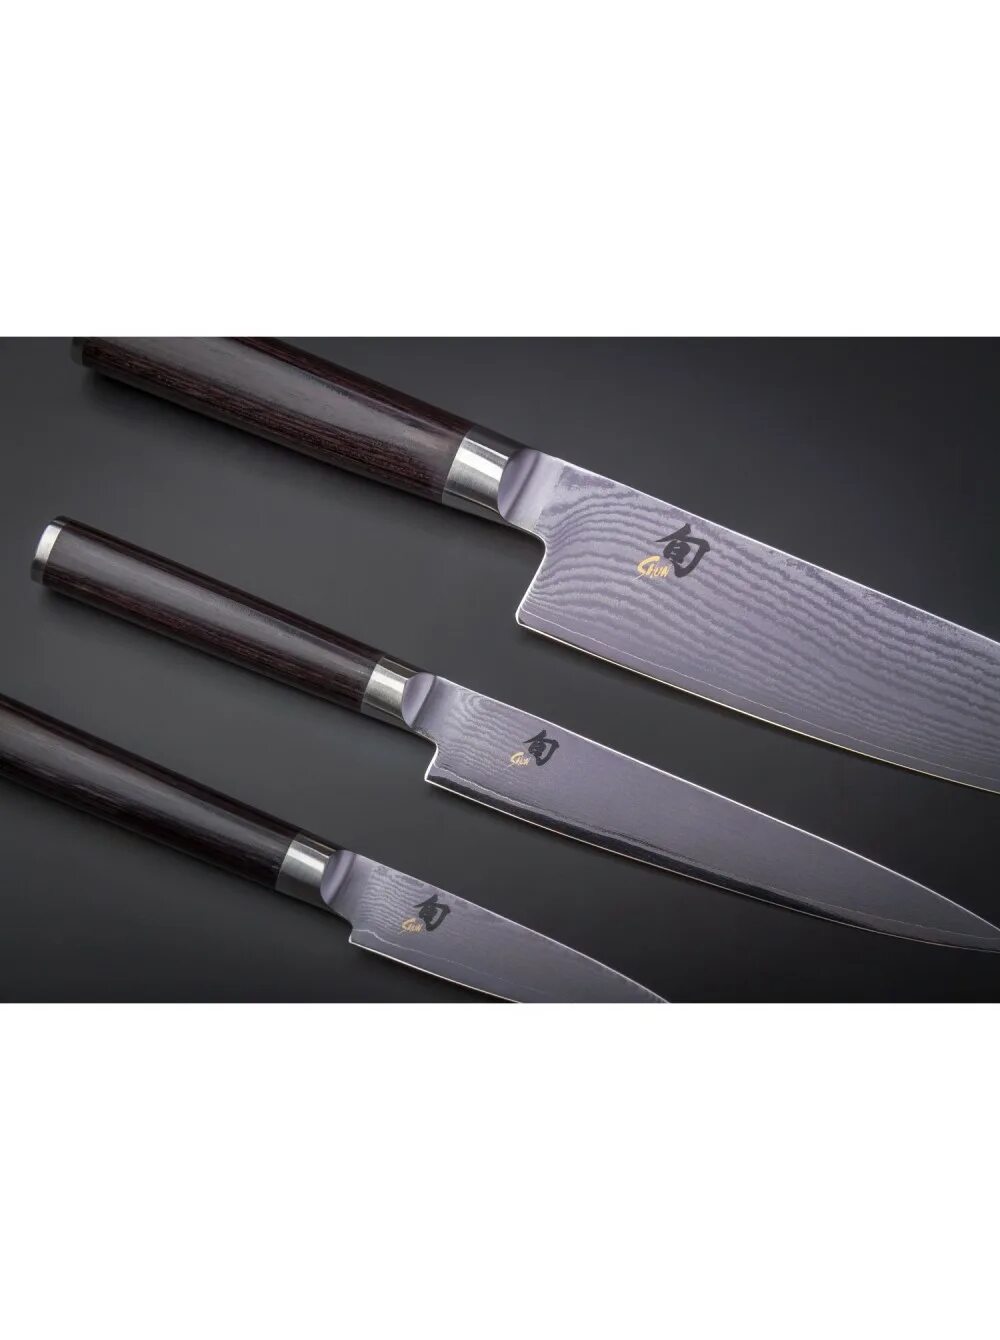 Японские ножи Самура. Японские фирмы Kai кухонных ножей. Набор ножей Самура. Нож Самурай поварской. Кухонные ножи купить в спб